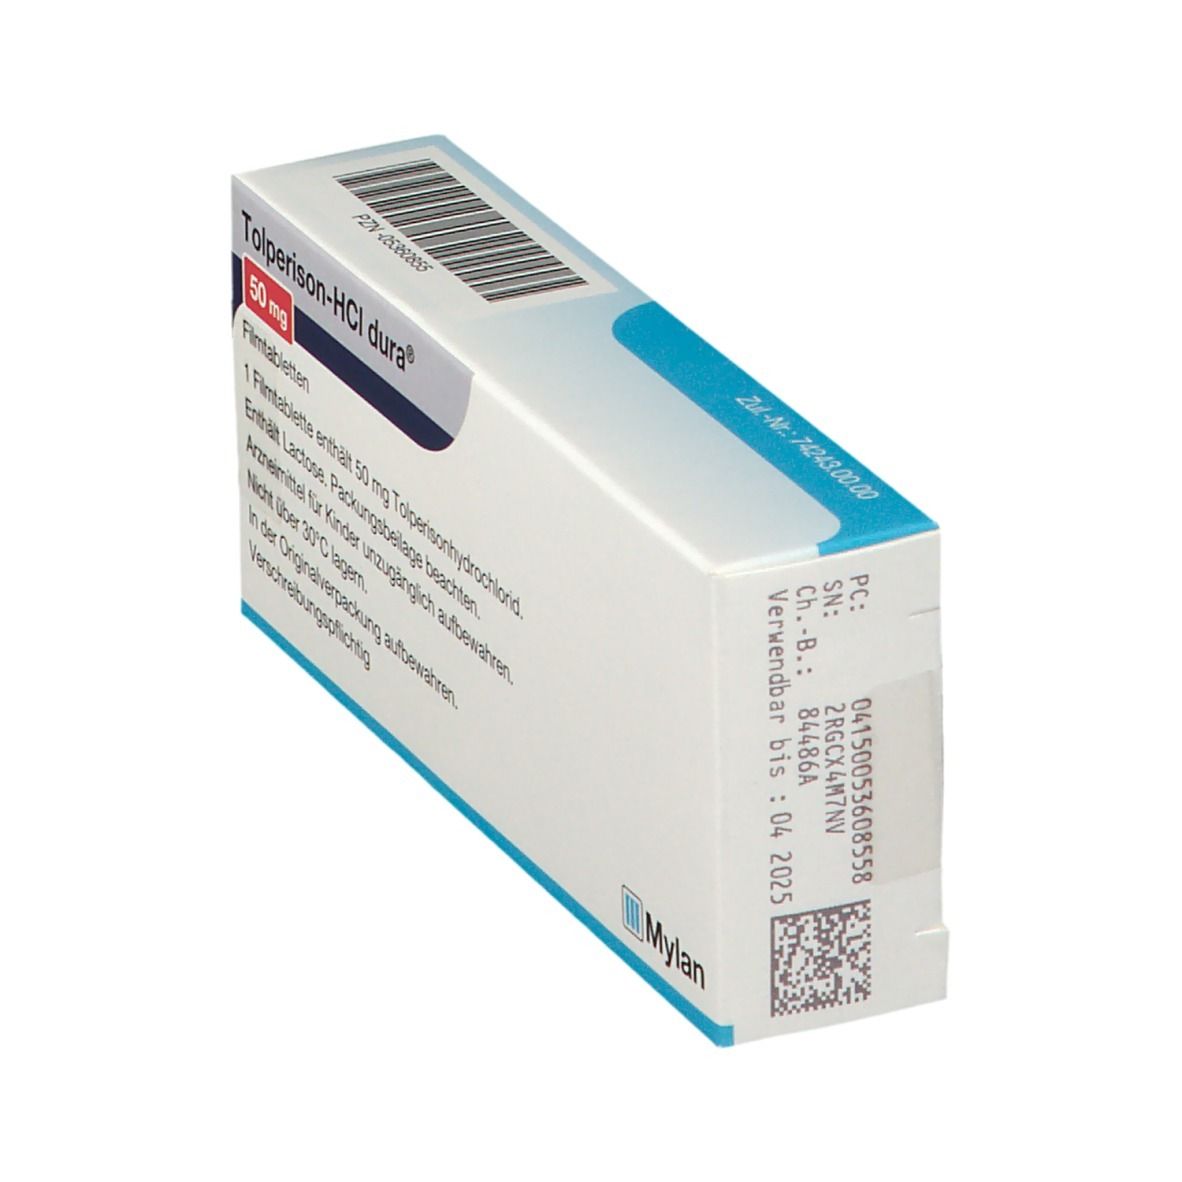 Tolperison-HCl dura® 50 mg